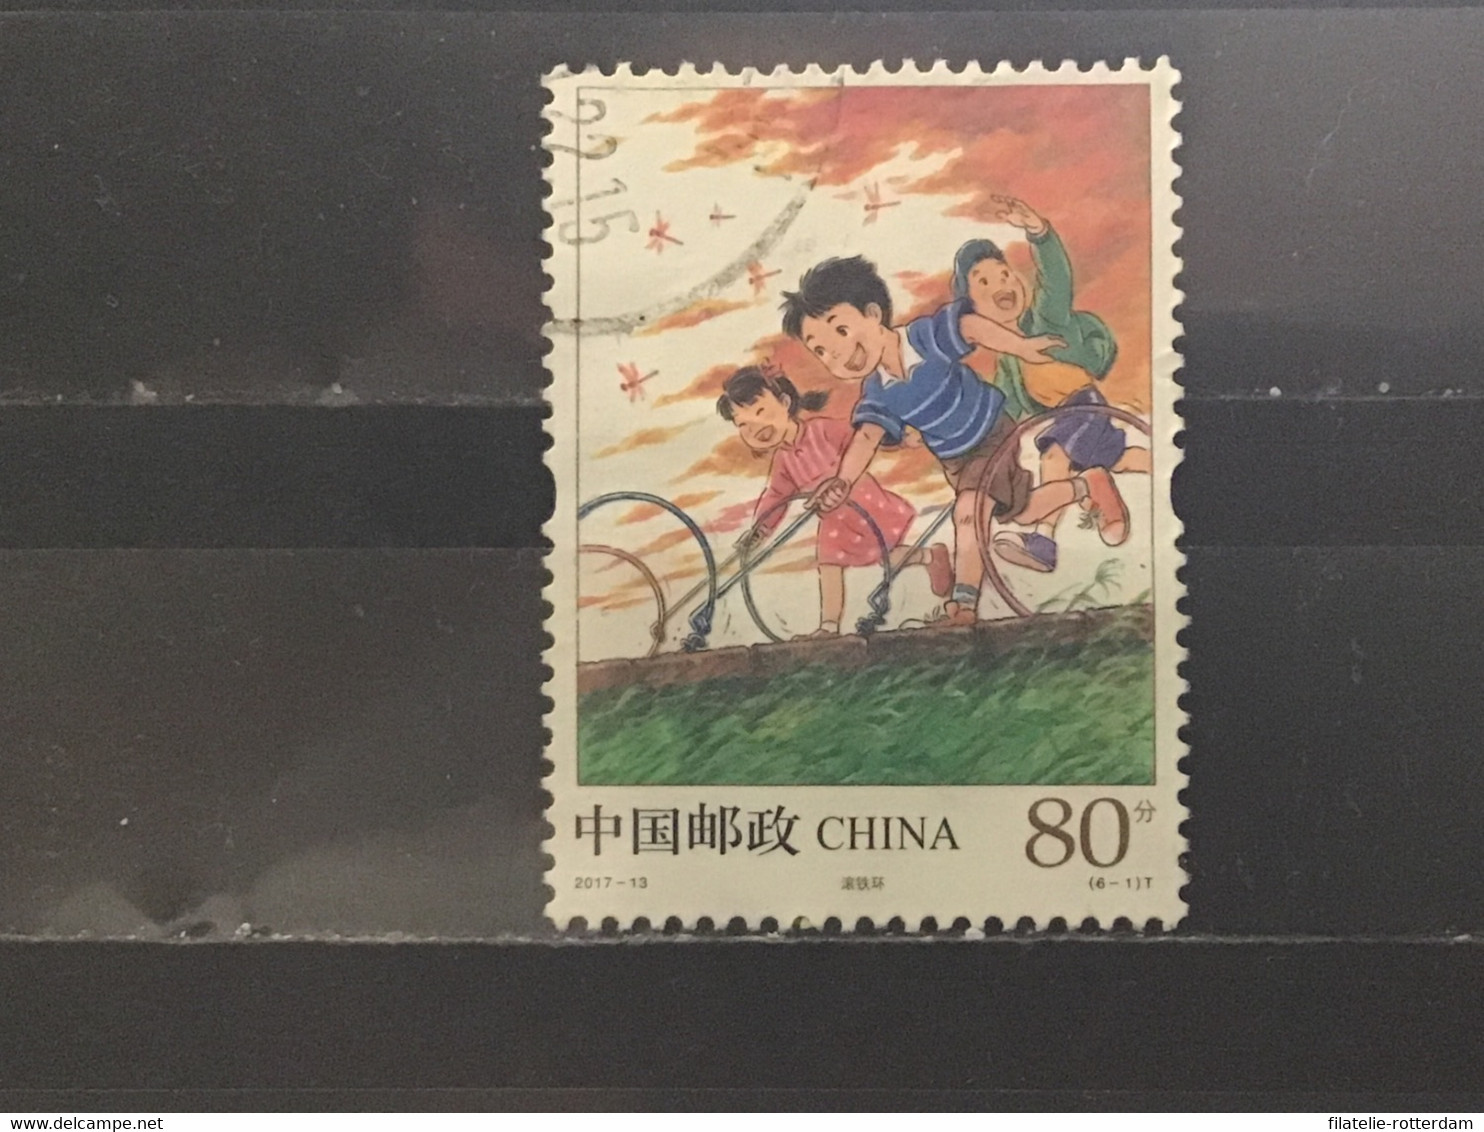 China - Kinderspelen (80) 2017 - Gebraucht